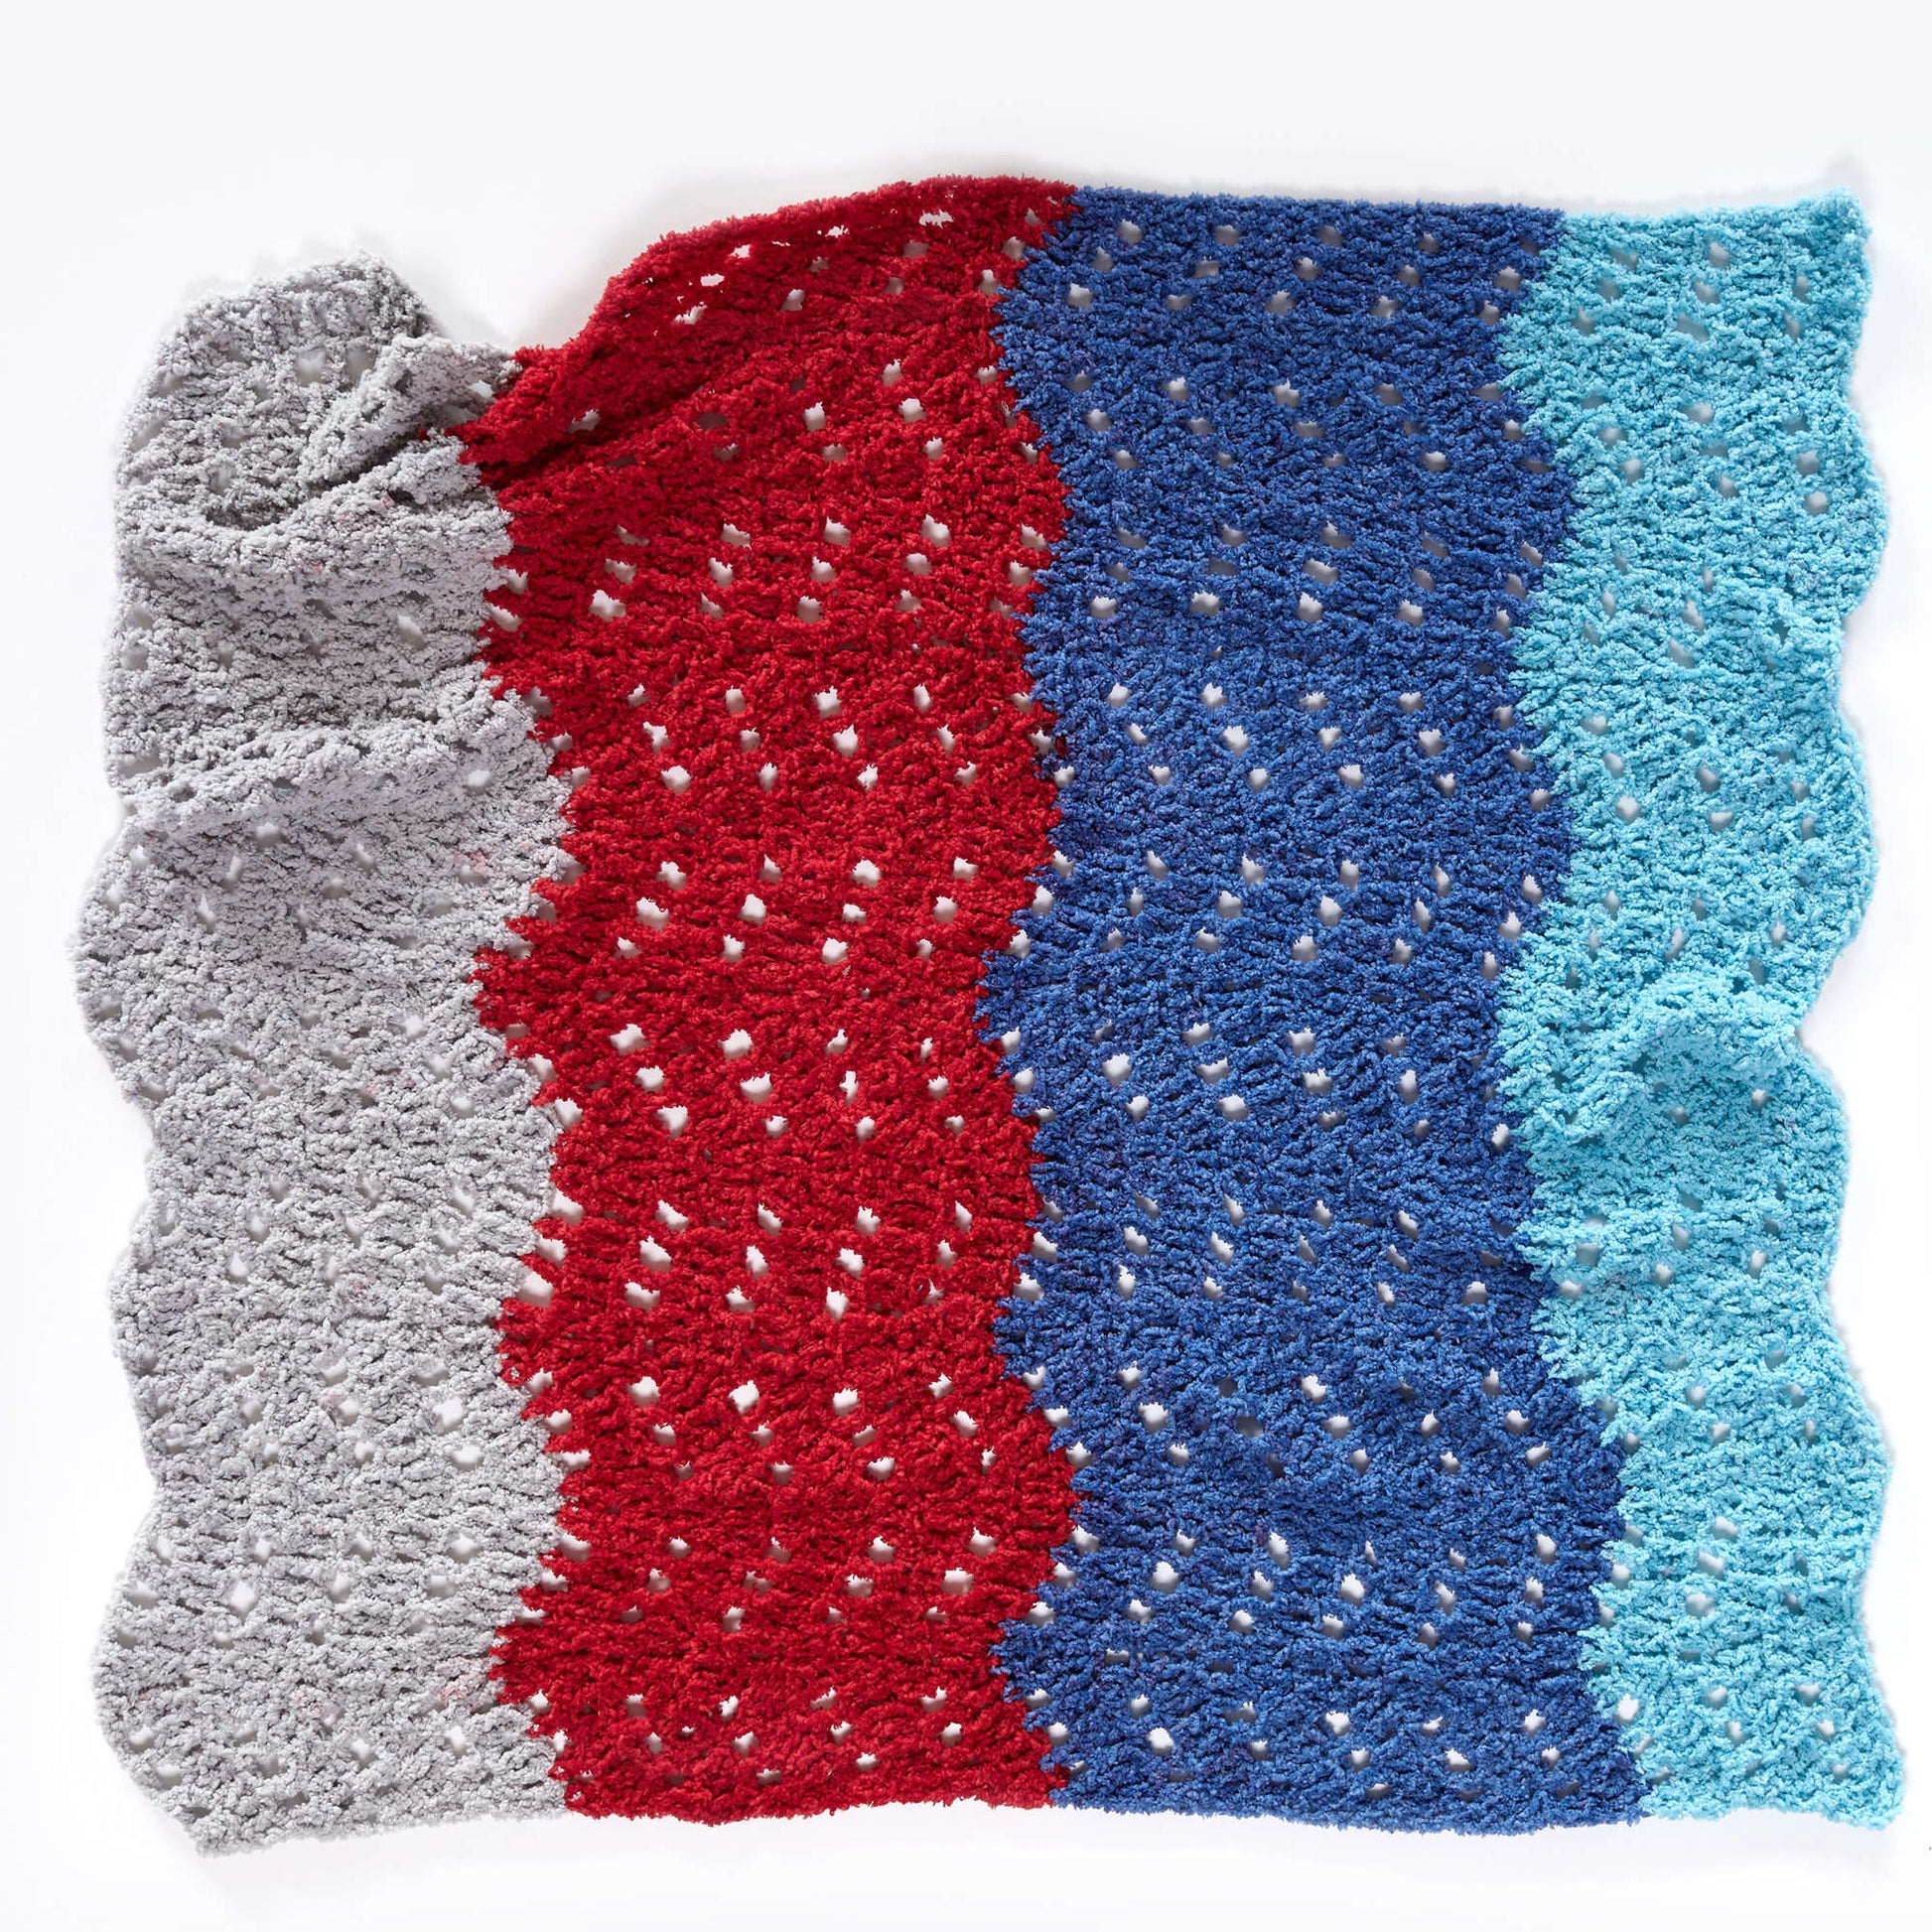 Free Red Heart One-Ball Gentle Ripple Crochet Baby Blanket Pattern